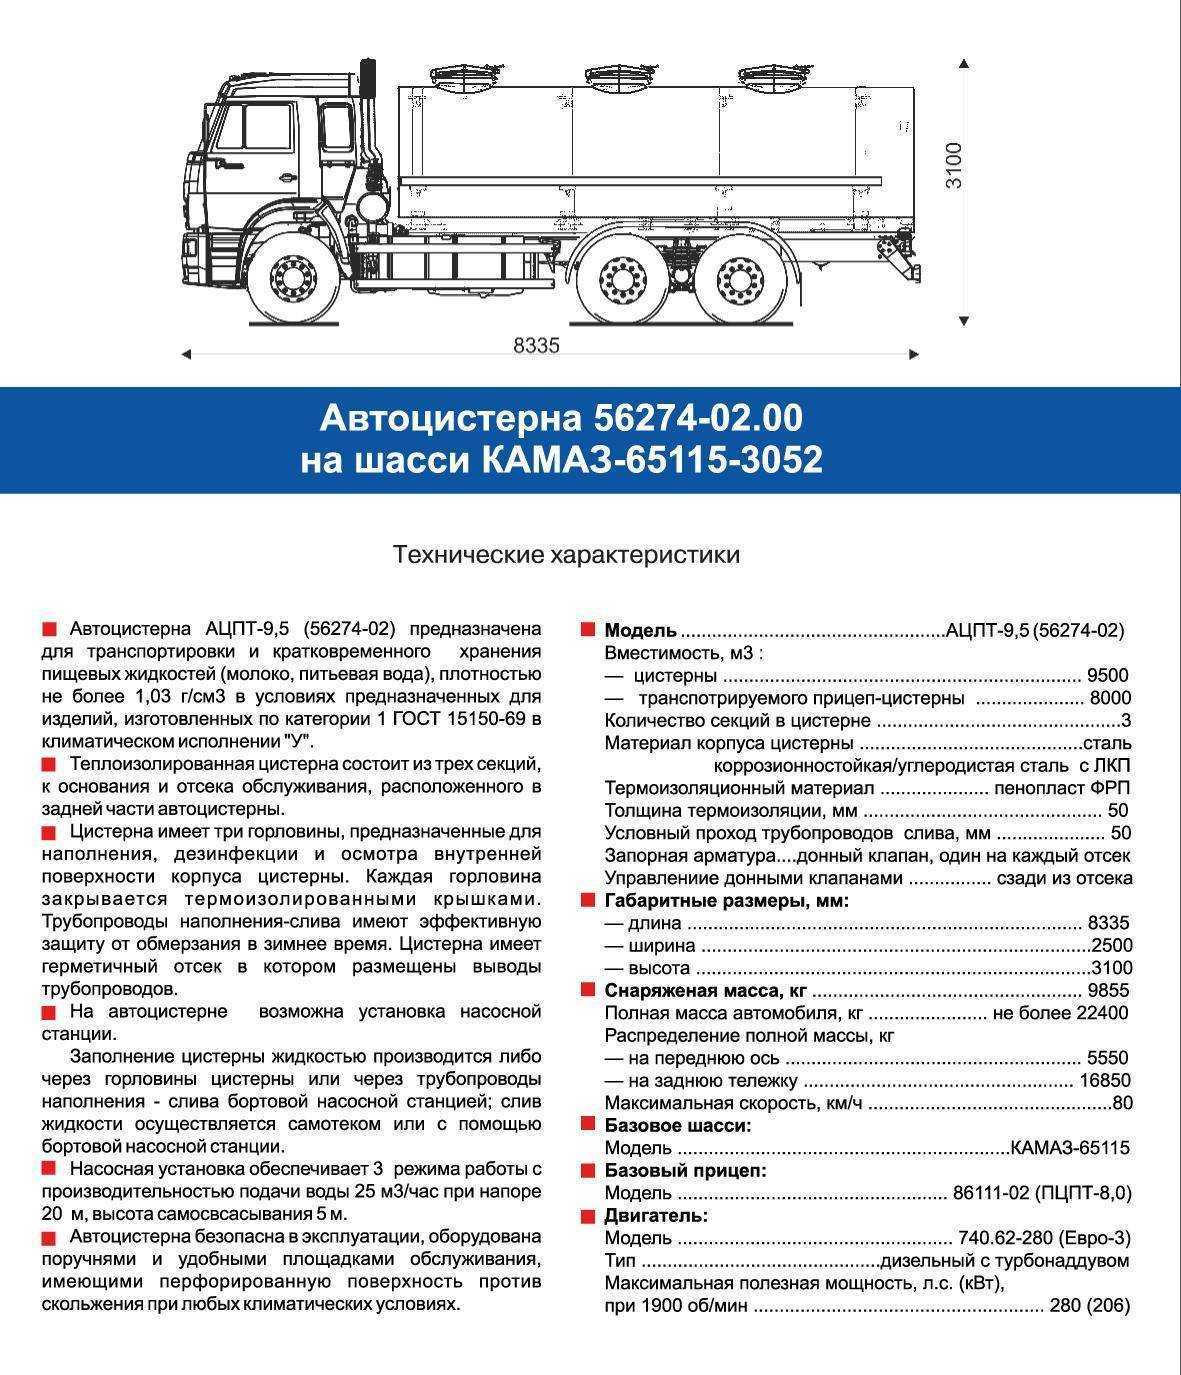 ✅ камаз самосвал 20 тонн технические характеристики - tractoramtz.ru